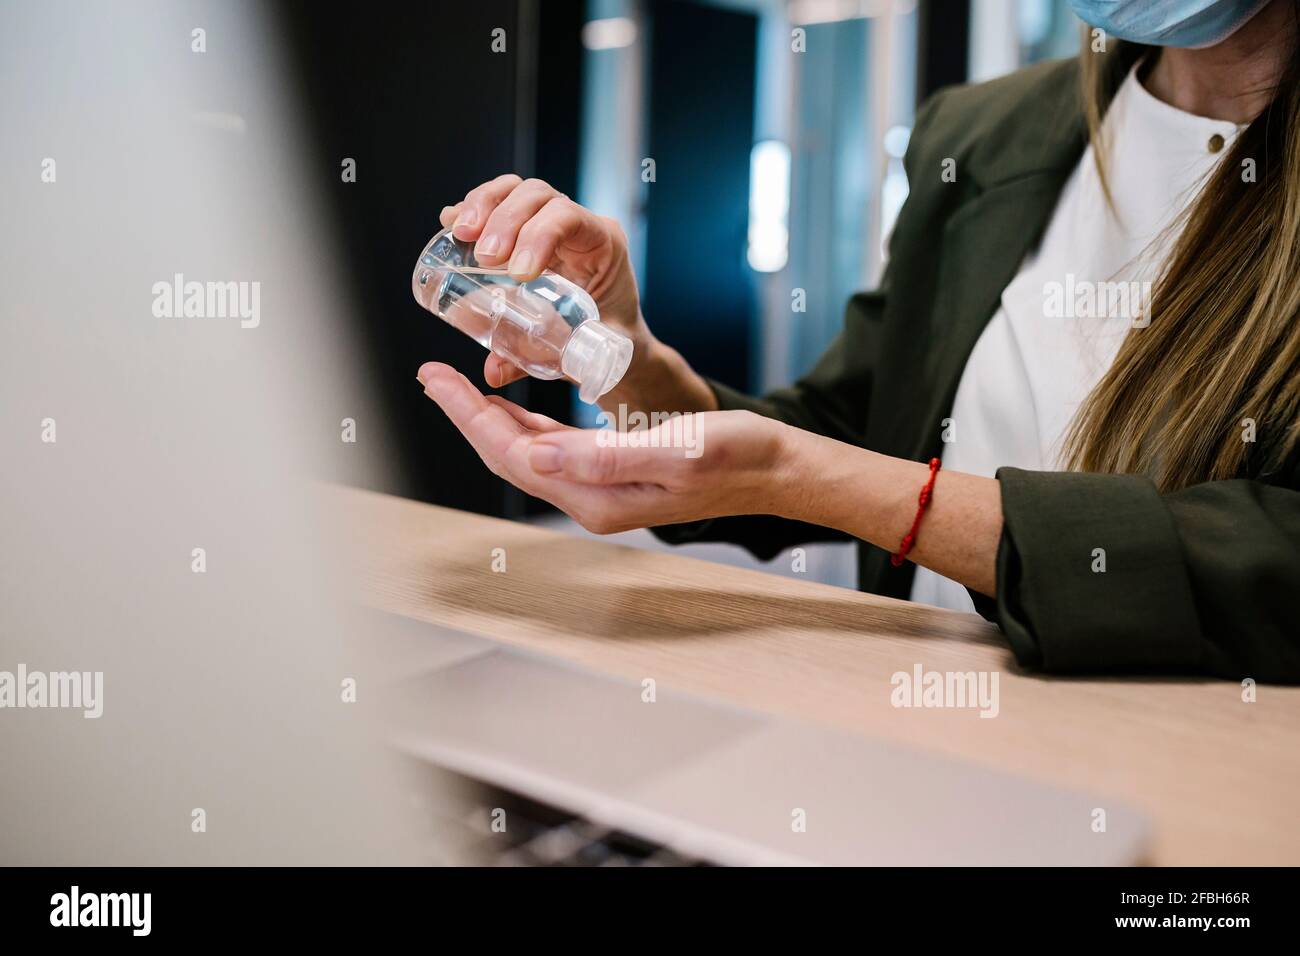 Femme utilisant un désinfectant pour les mains au bureau Banque D'Images